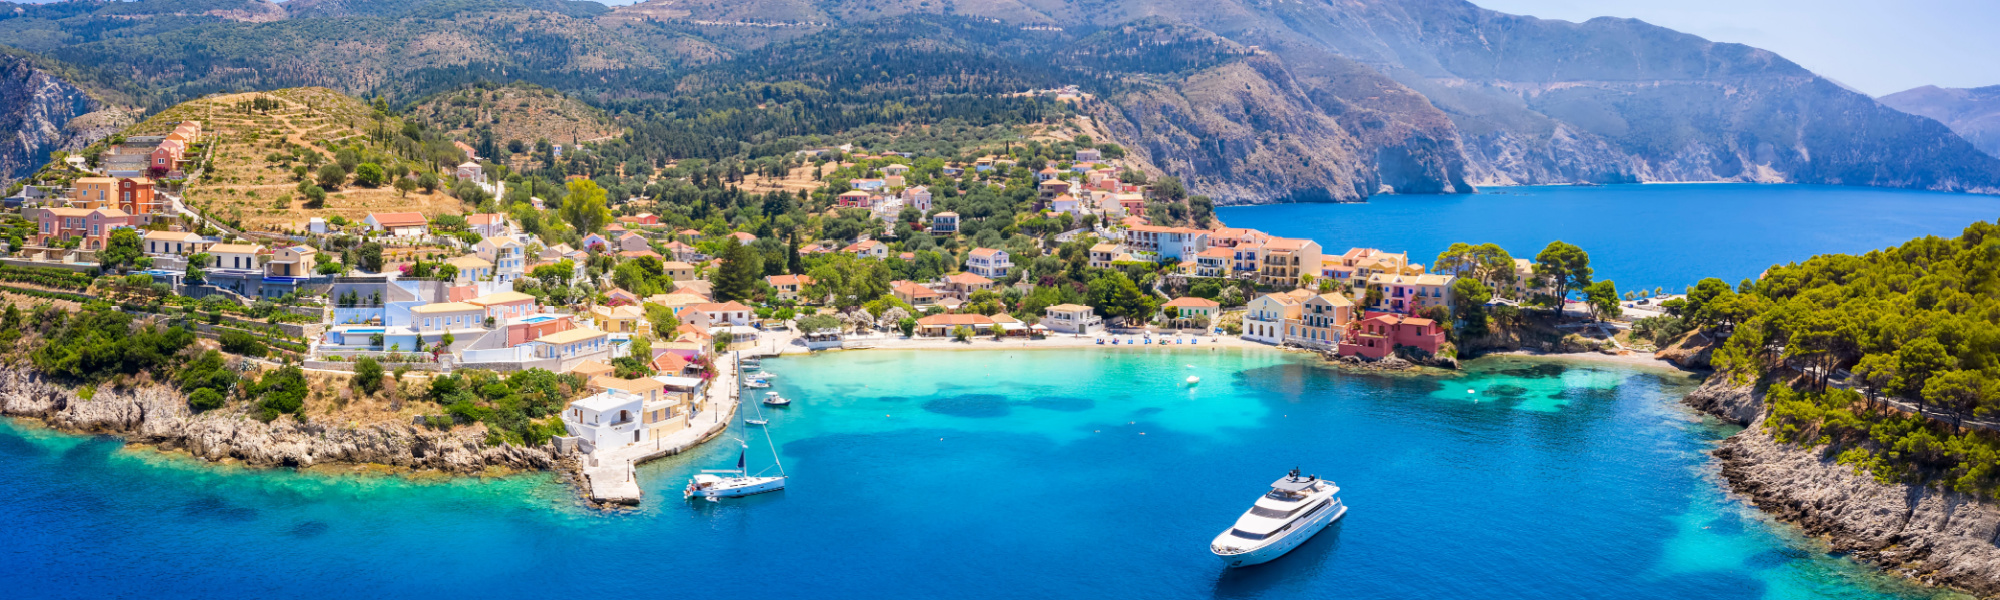 Reiseziele im Juni - Griechenland